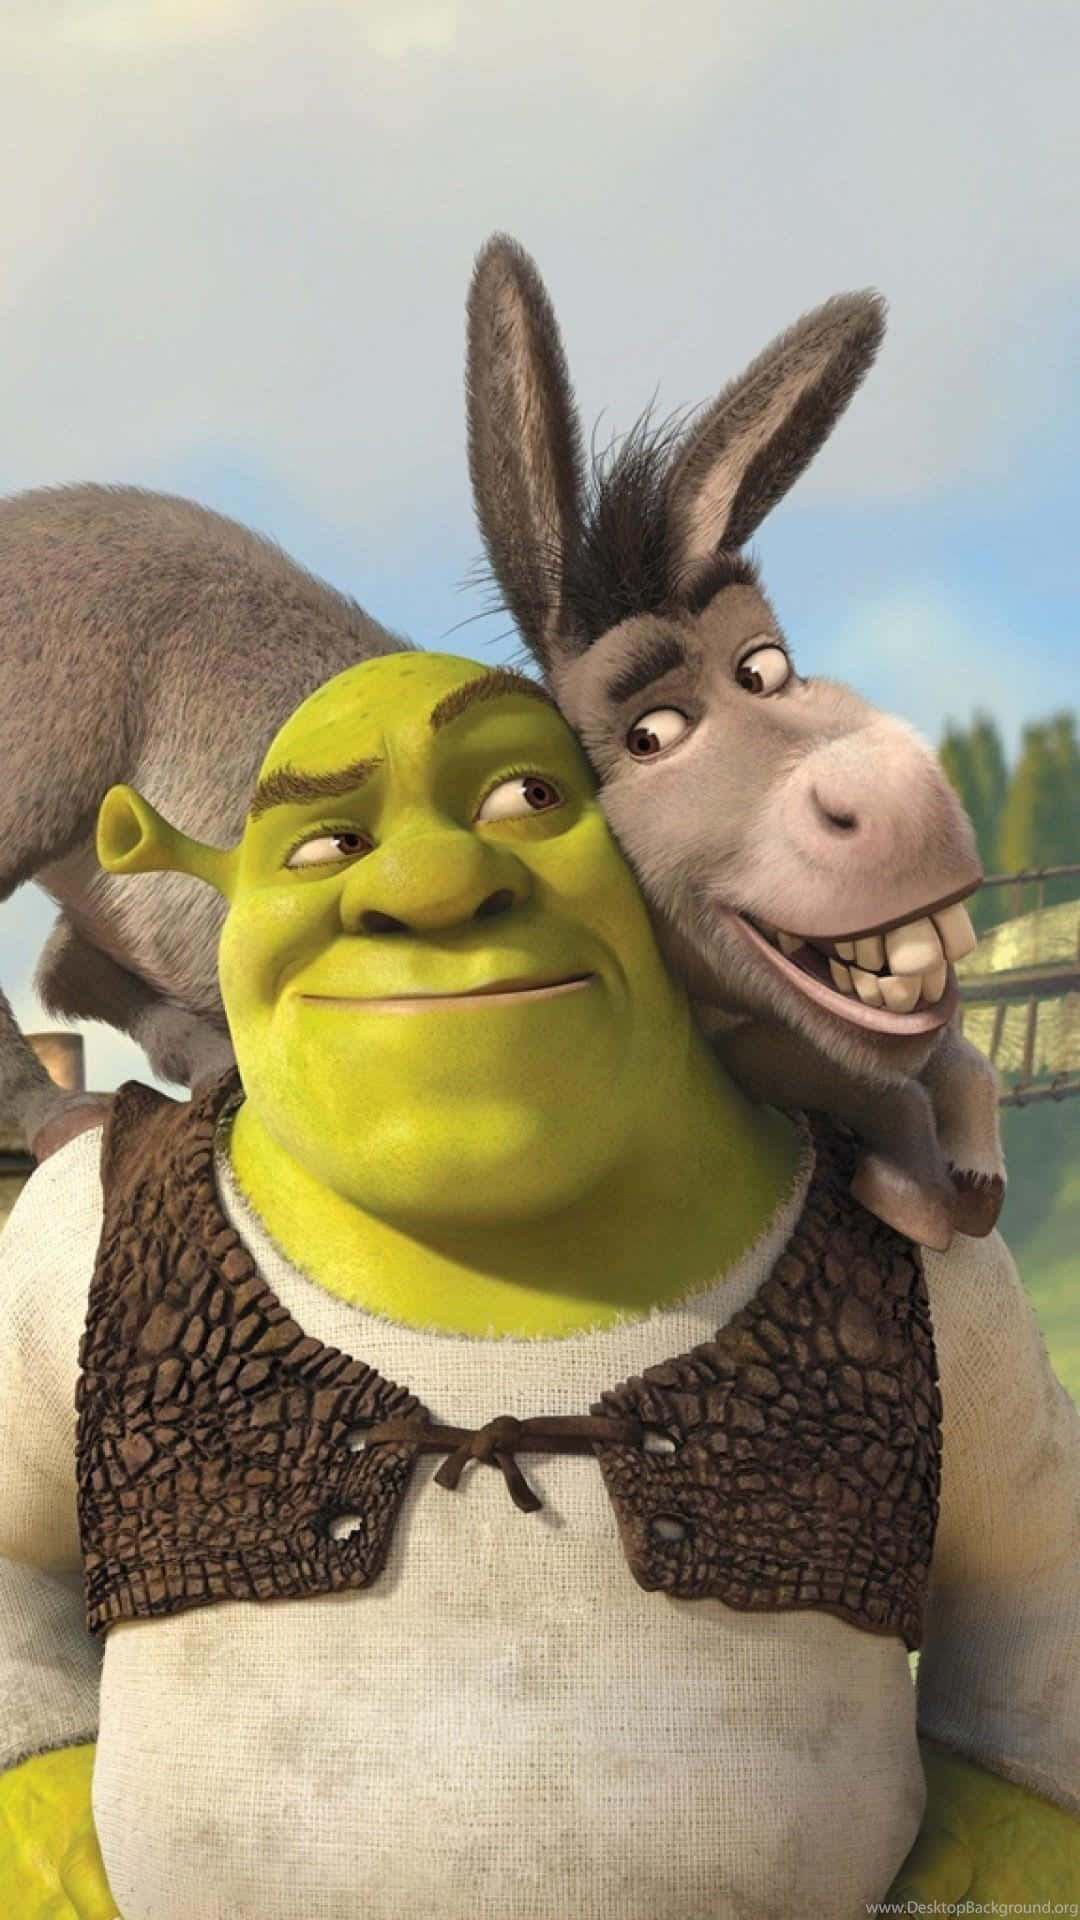 Shrek having a chuckle